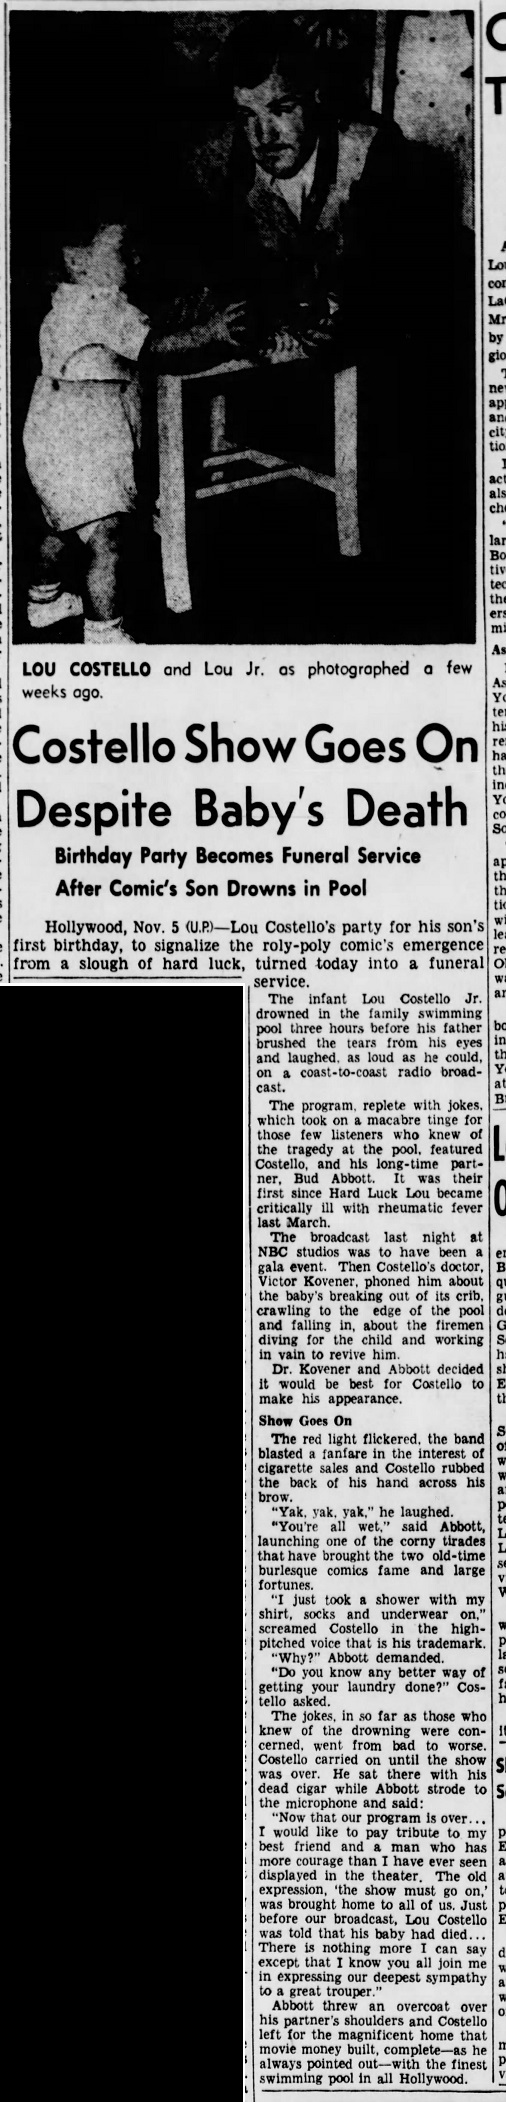 The_Brooklyn_Daily_Eagle_Fri__Nov_5__1943_(1).jpg